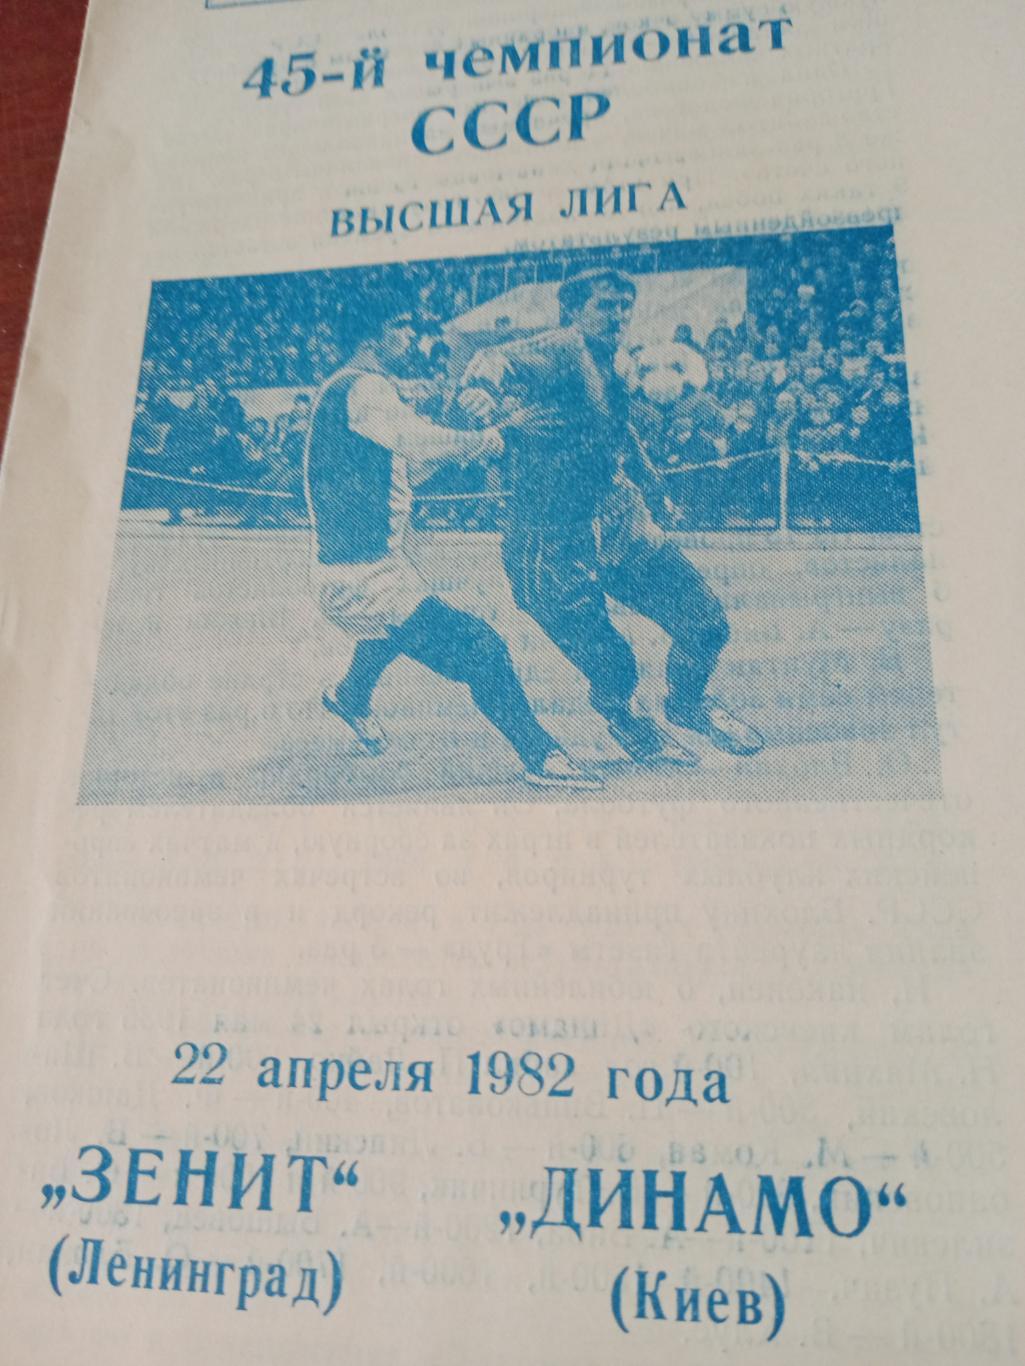 Зенит Ленинград - Динамо Киев - 22.04.1982 год